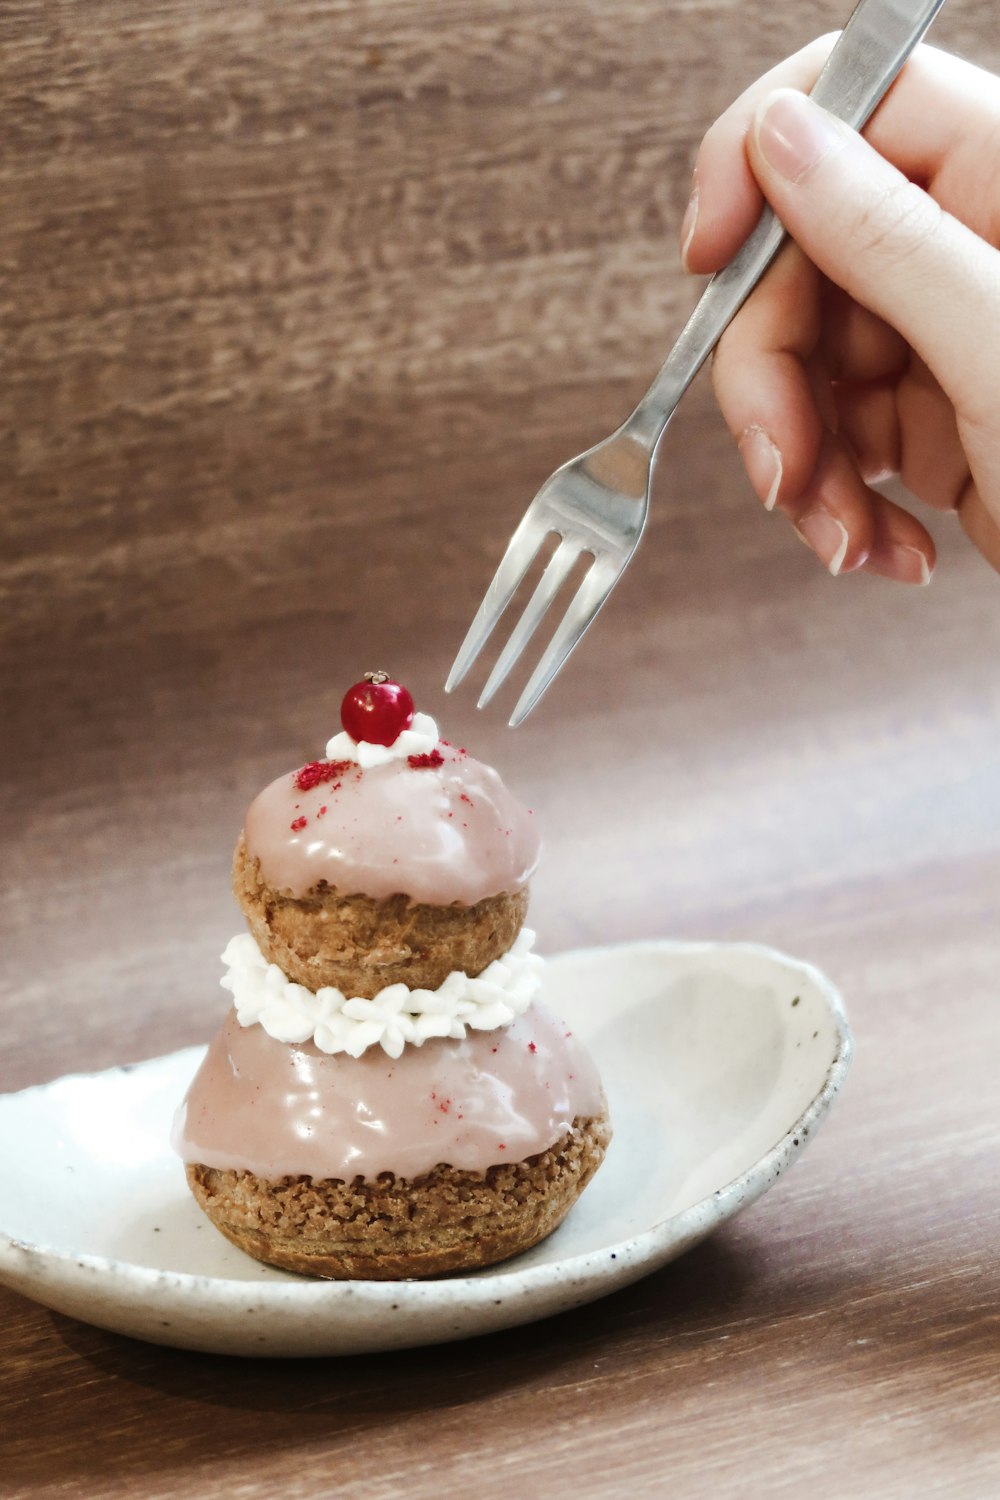 uma pessoa está segurando um garfo sobre um cupcake em um prato